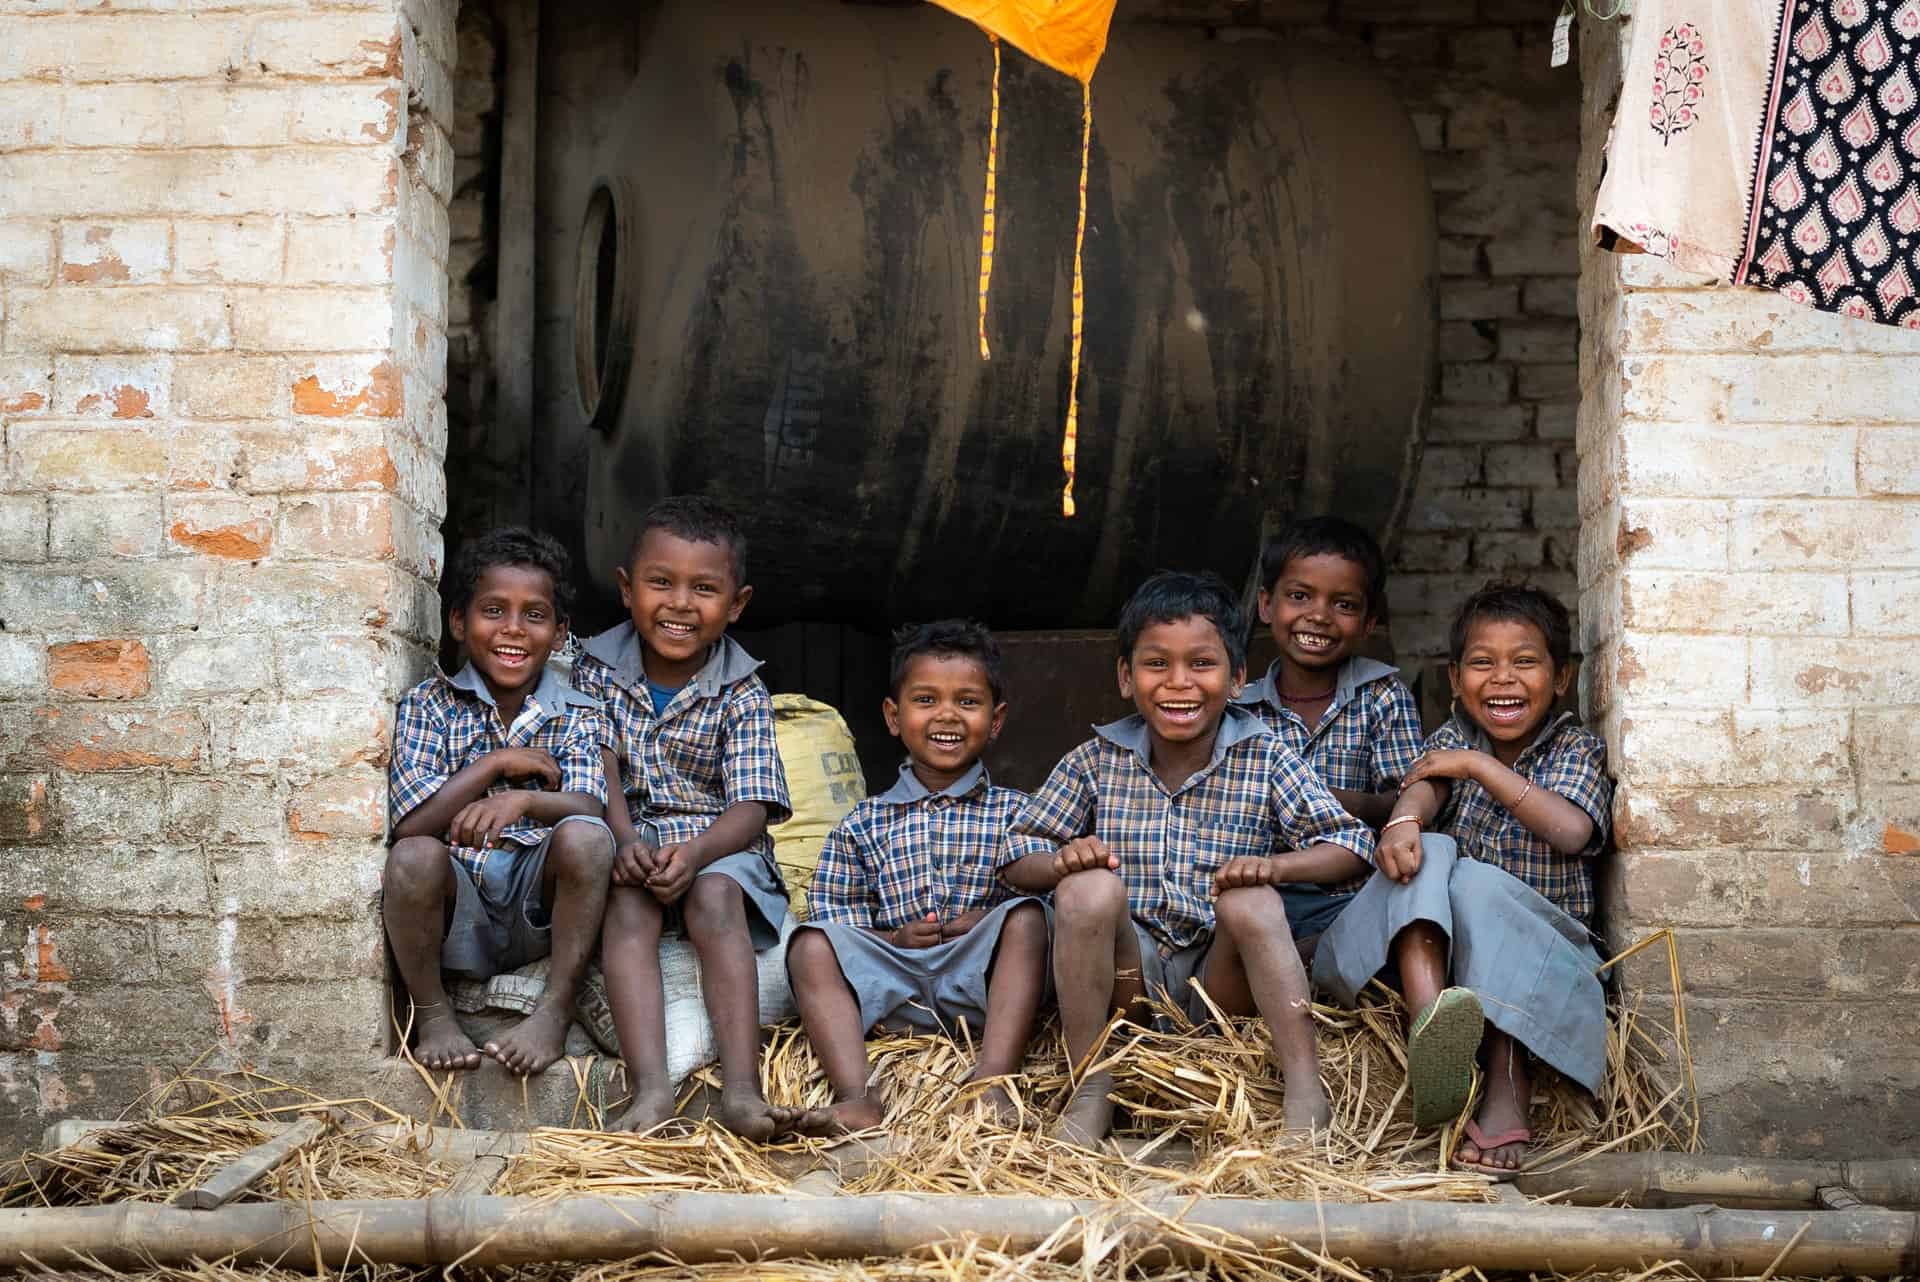 Des enfants, issus de parents migrants travaillant dans les briqueteries de Bihar en Inde, qui reçoivent une éducation grâce aux initiatives d'Action Education. Inde, Mars 2022. © Chandra Kiran